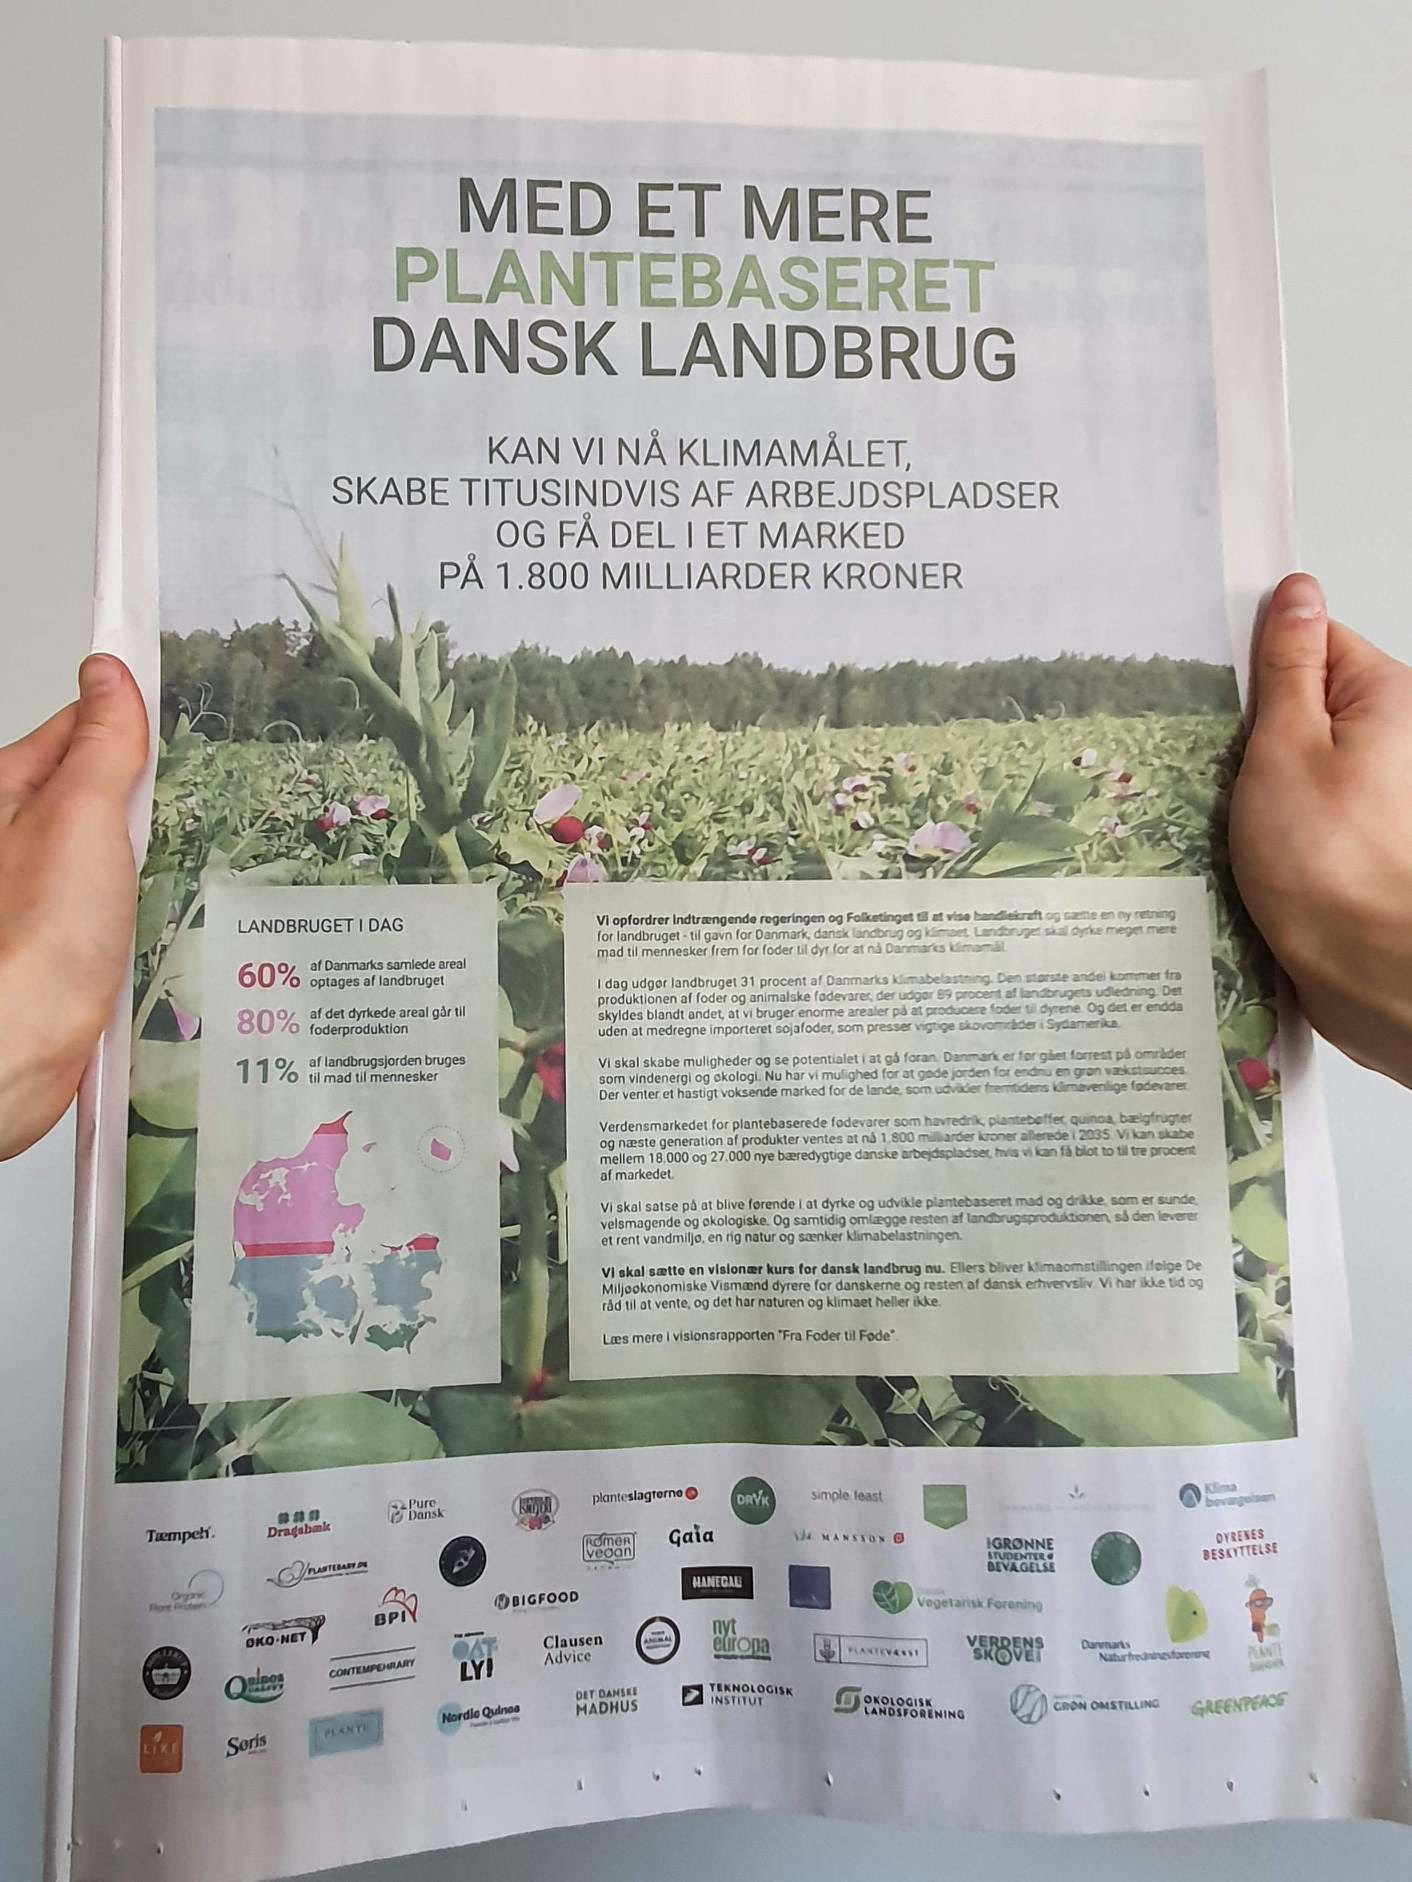 45 grønne organisationer og virksomheder i opråb op til landbrugsforhandlingerne - Danmark